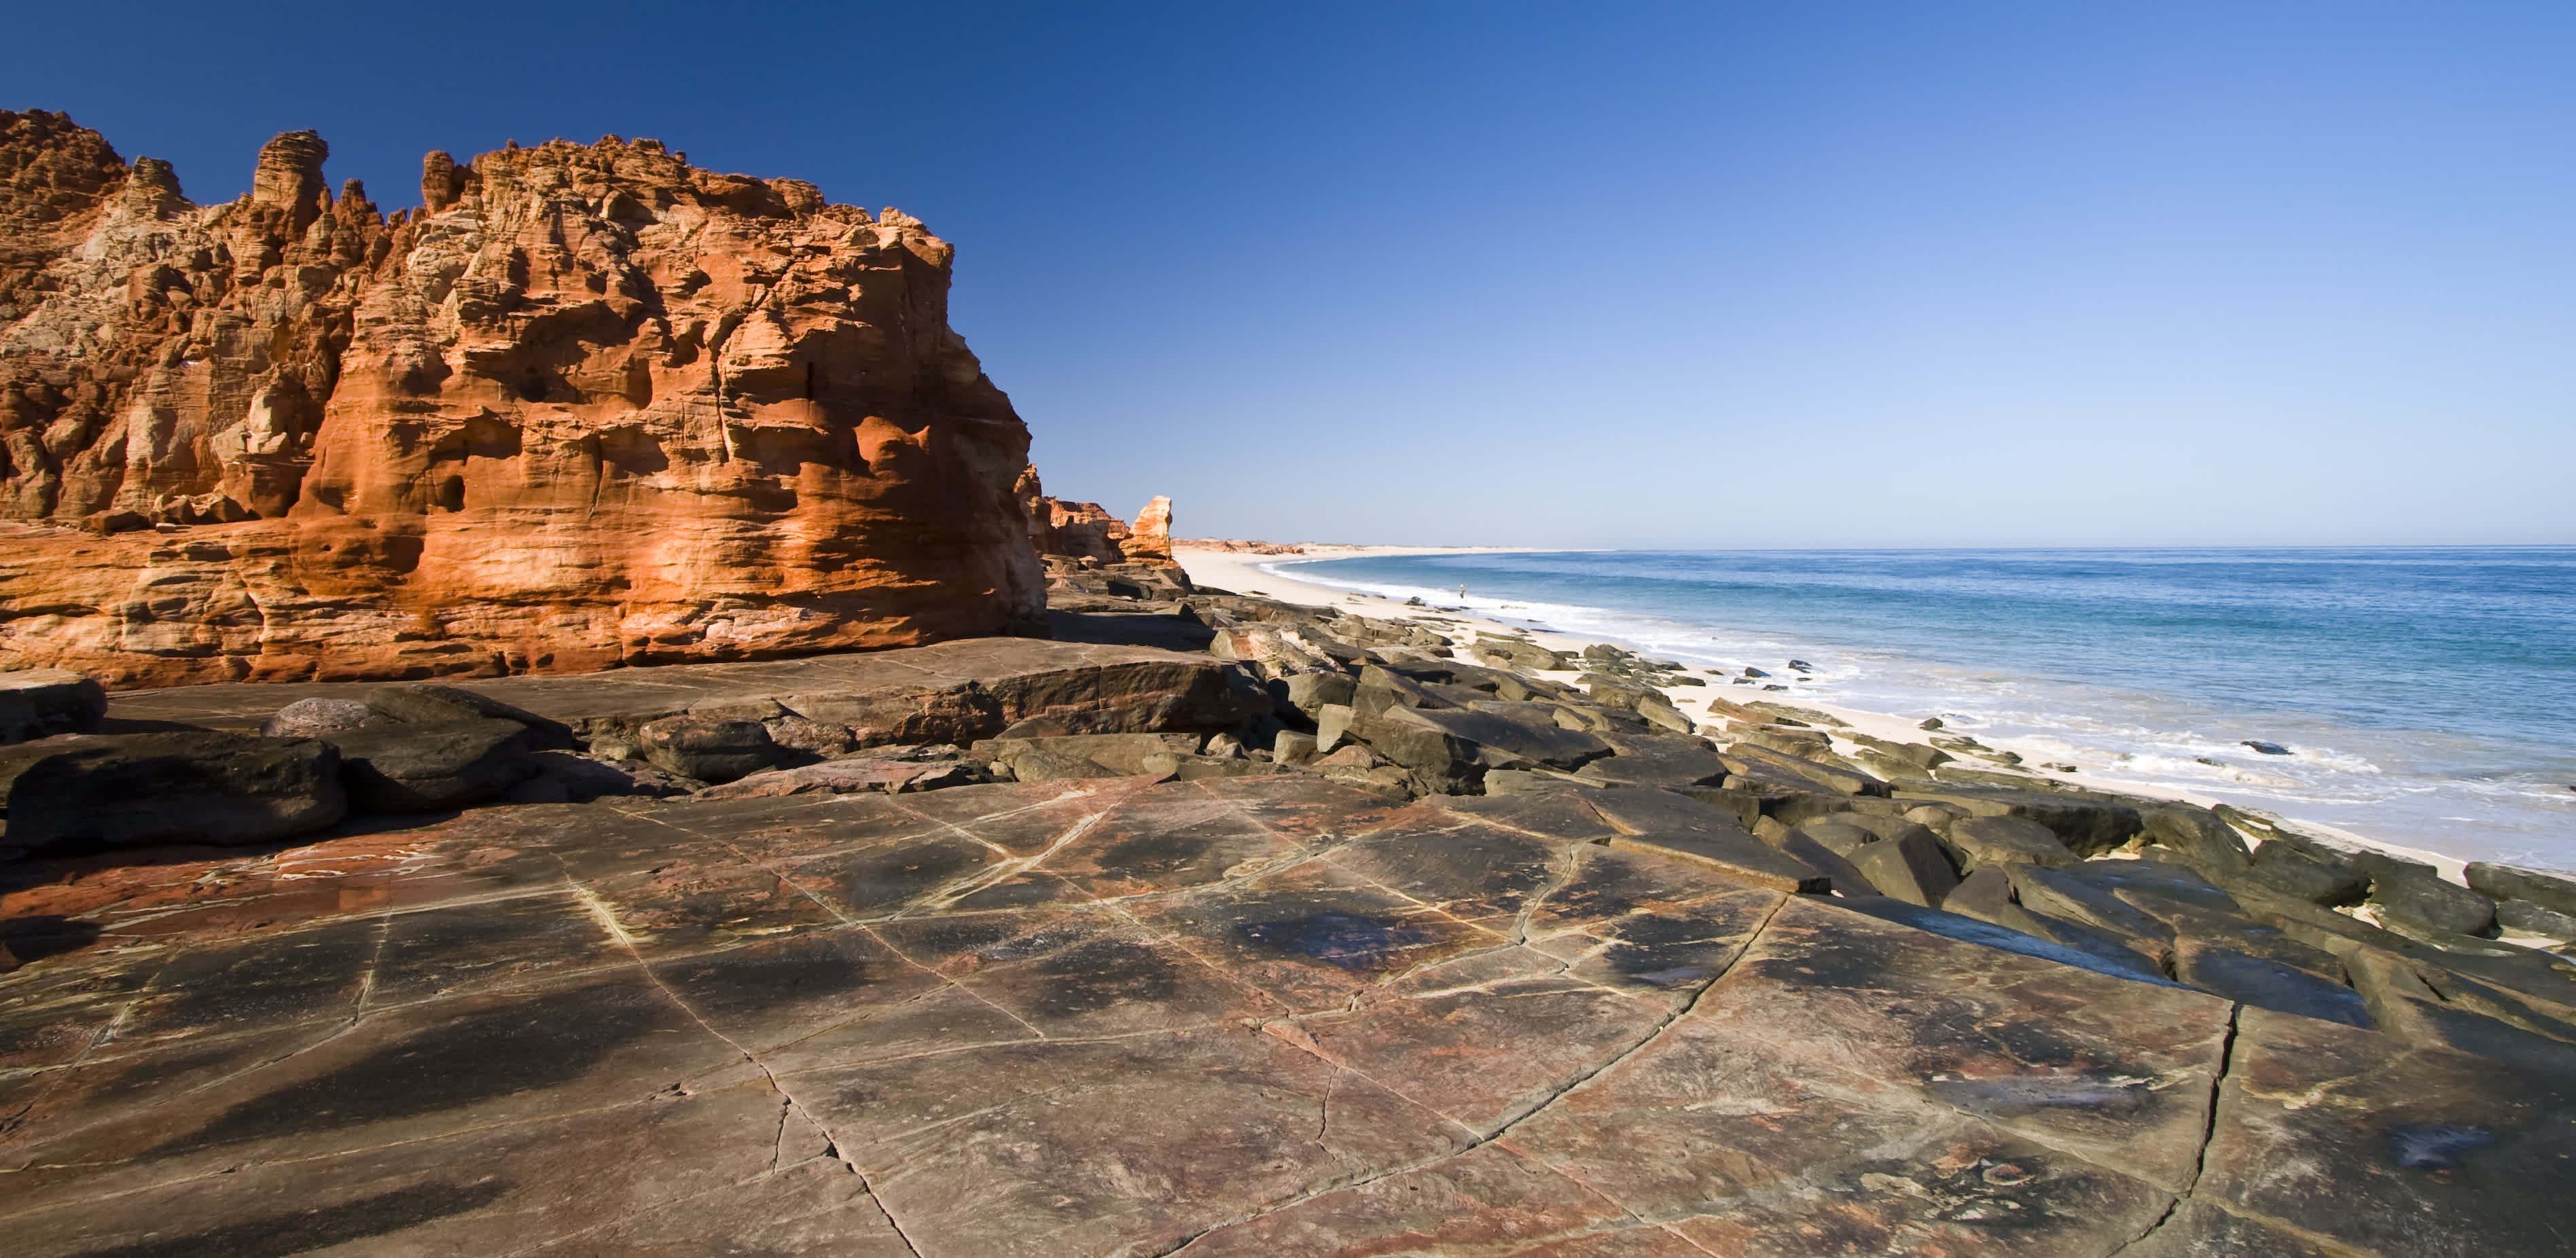 La plage immaculée et les falaises rouges de Cape Leveque au nord de Broome en Australie occidentale
